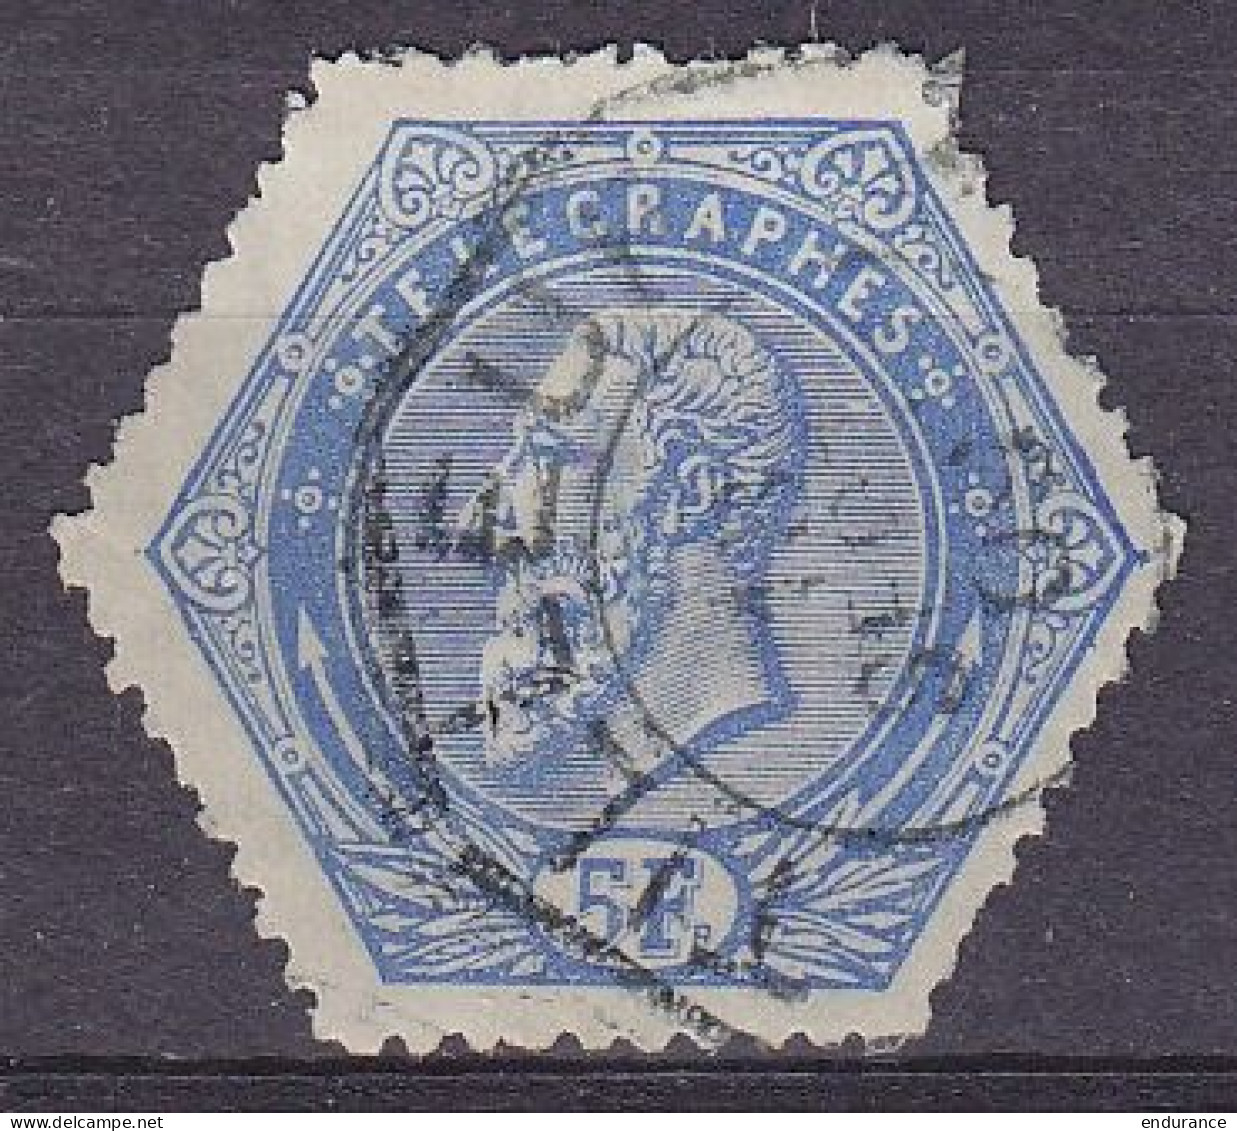 Belgique - Télégraphe TG17 (1899) 5f Bleu - Superbe Oblit. TILLEUR /18 SEPT 190? - Sellos Telégrafos [TG]